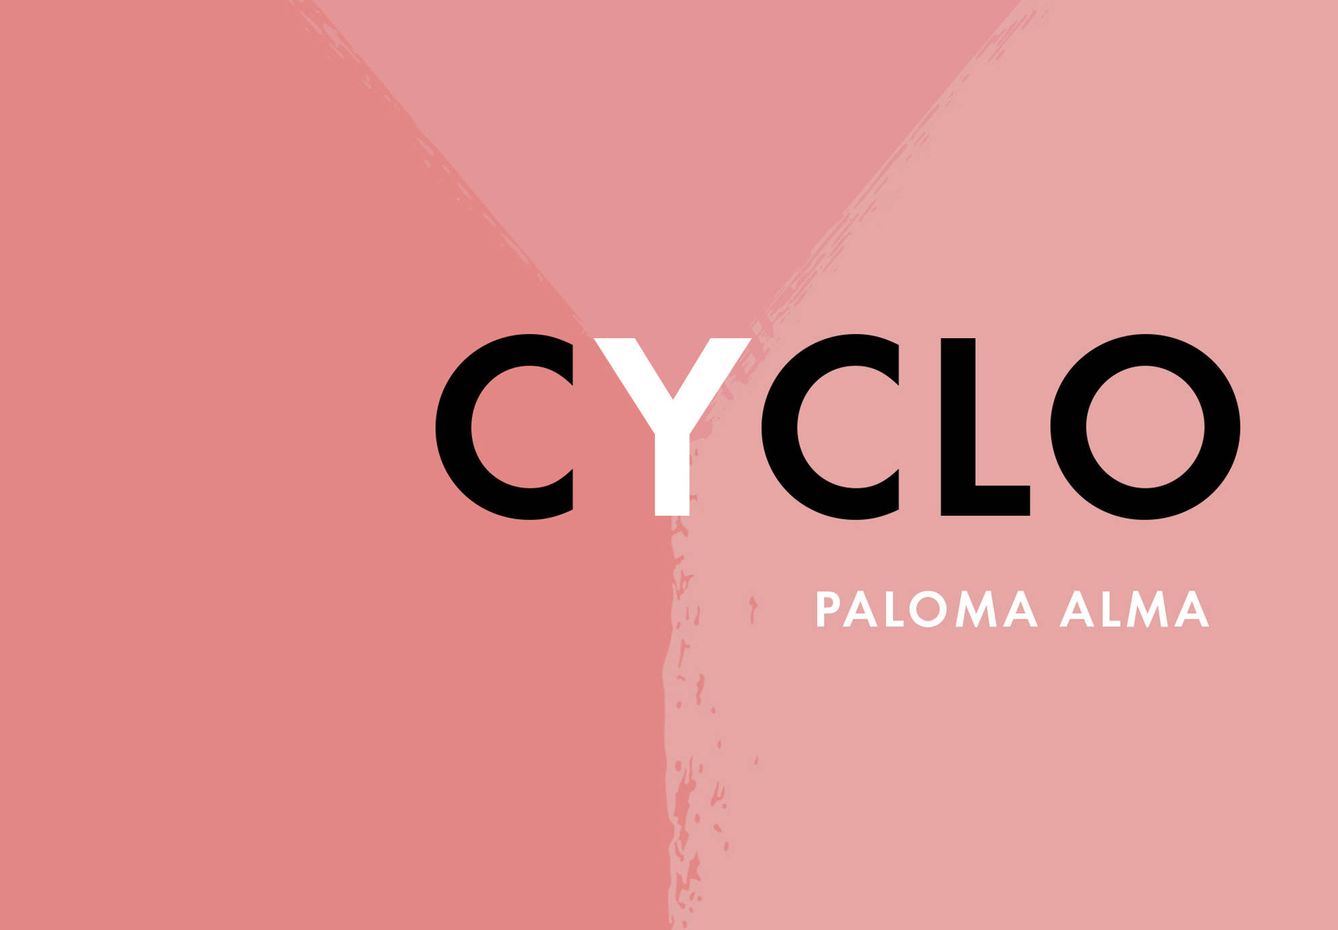 Extracto de la portada de 'Cyclo', de Paloma Alma.